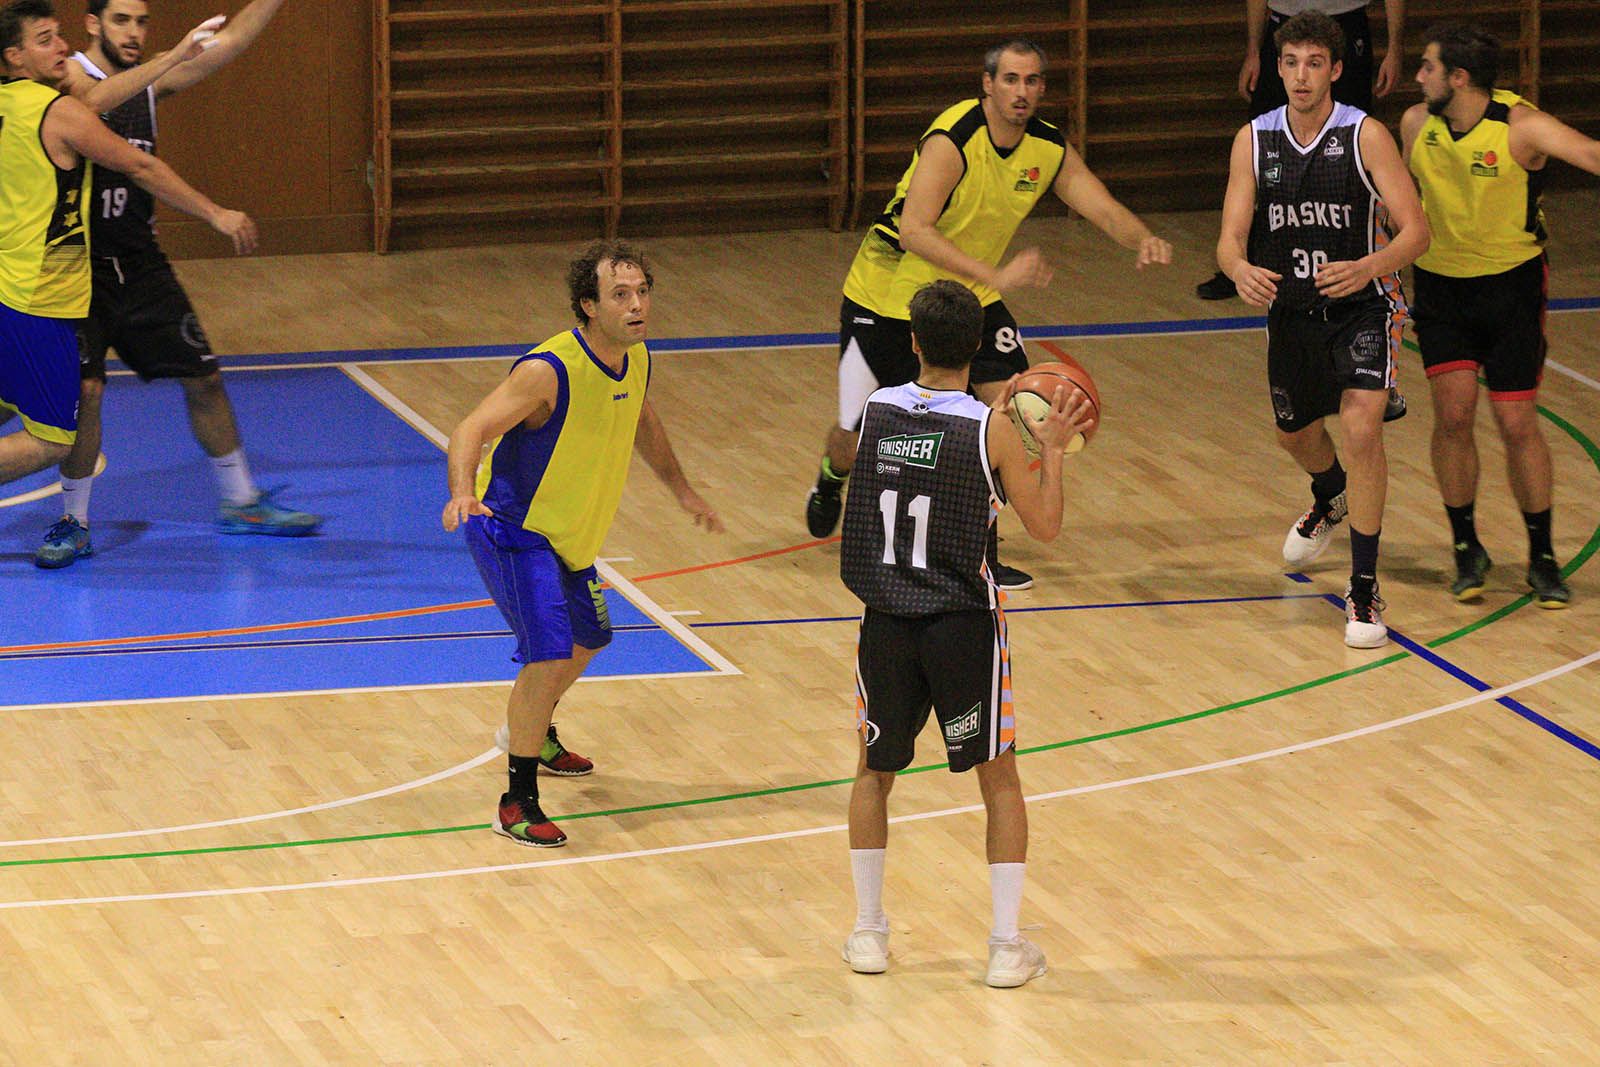 El partit entre el Qbasket i el CB Salou B ha estat molt igualat. FOTO: Lali Álvarez